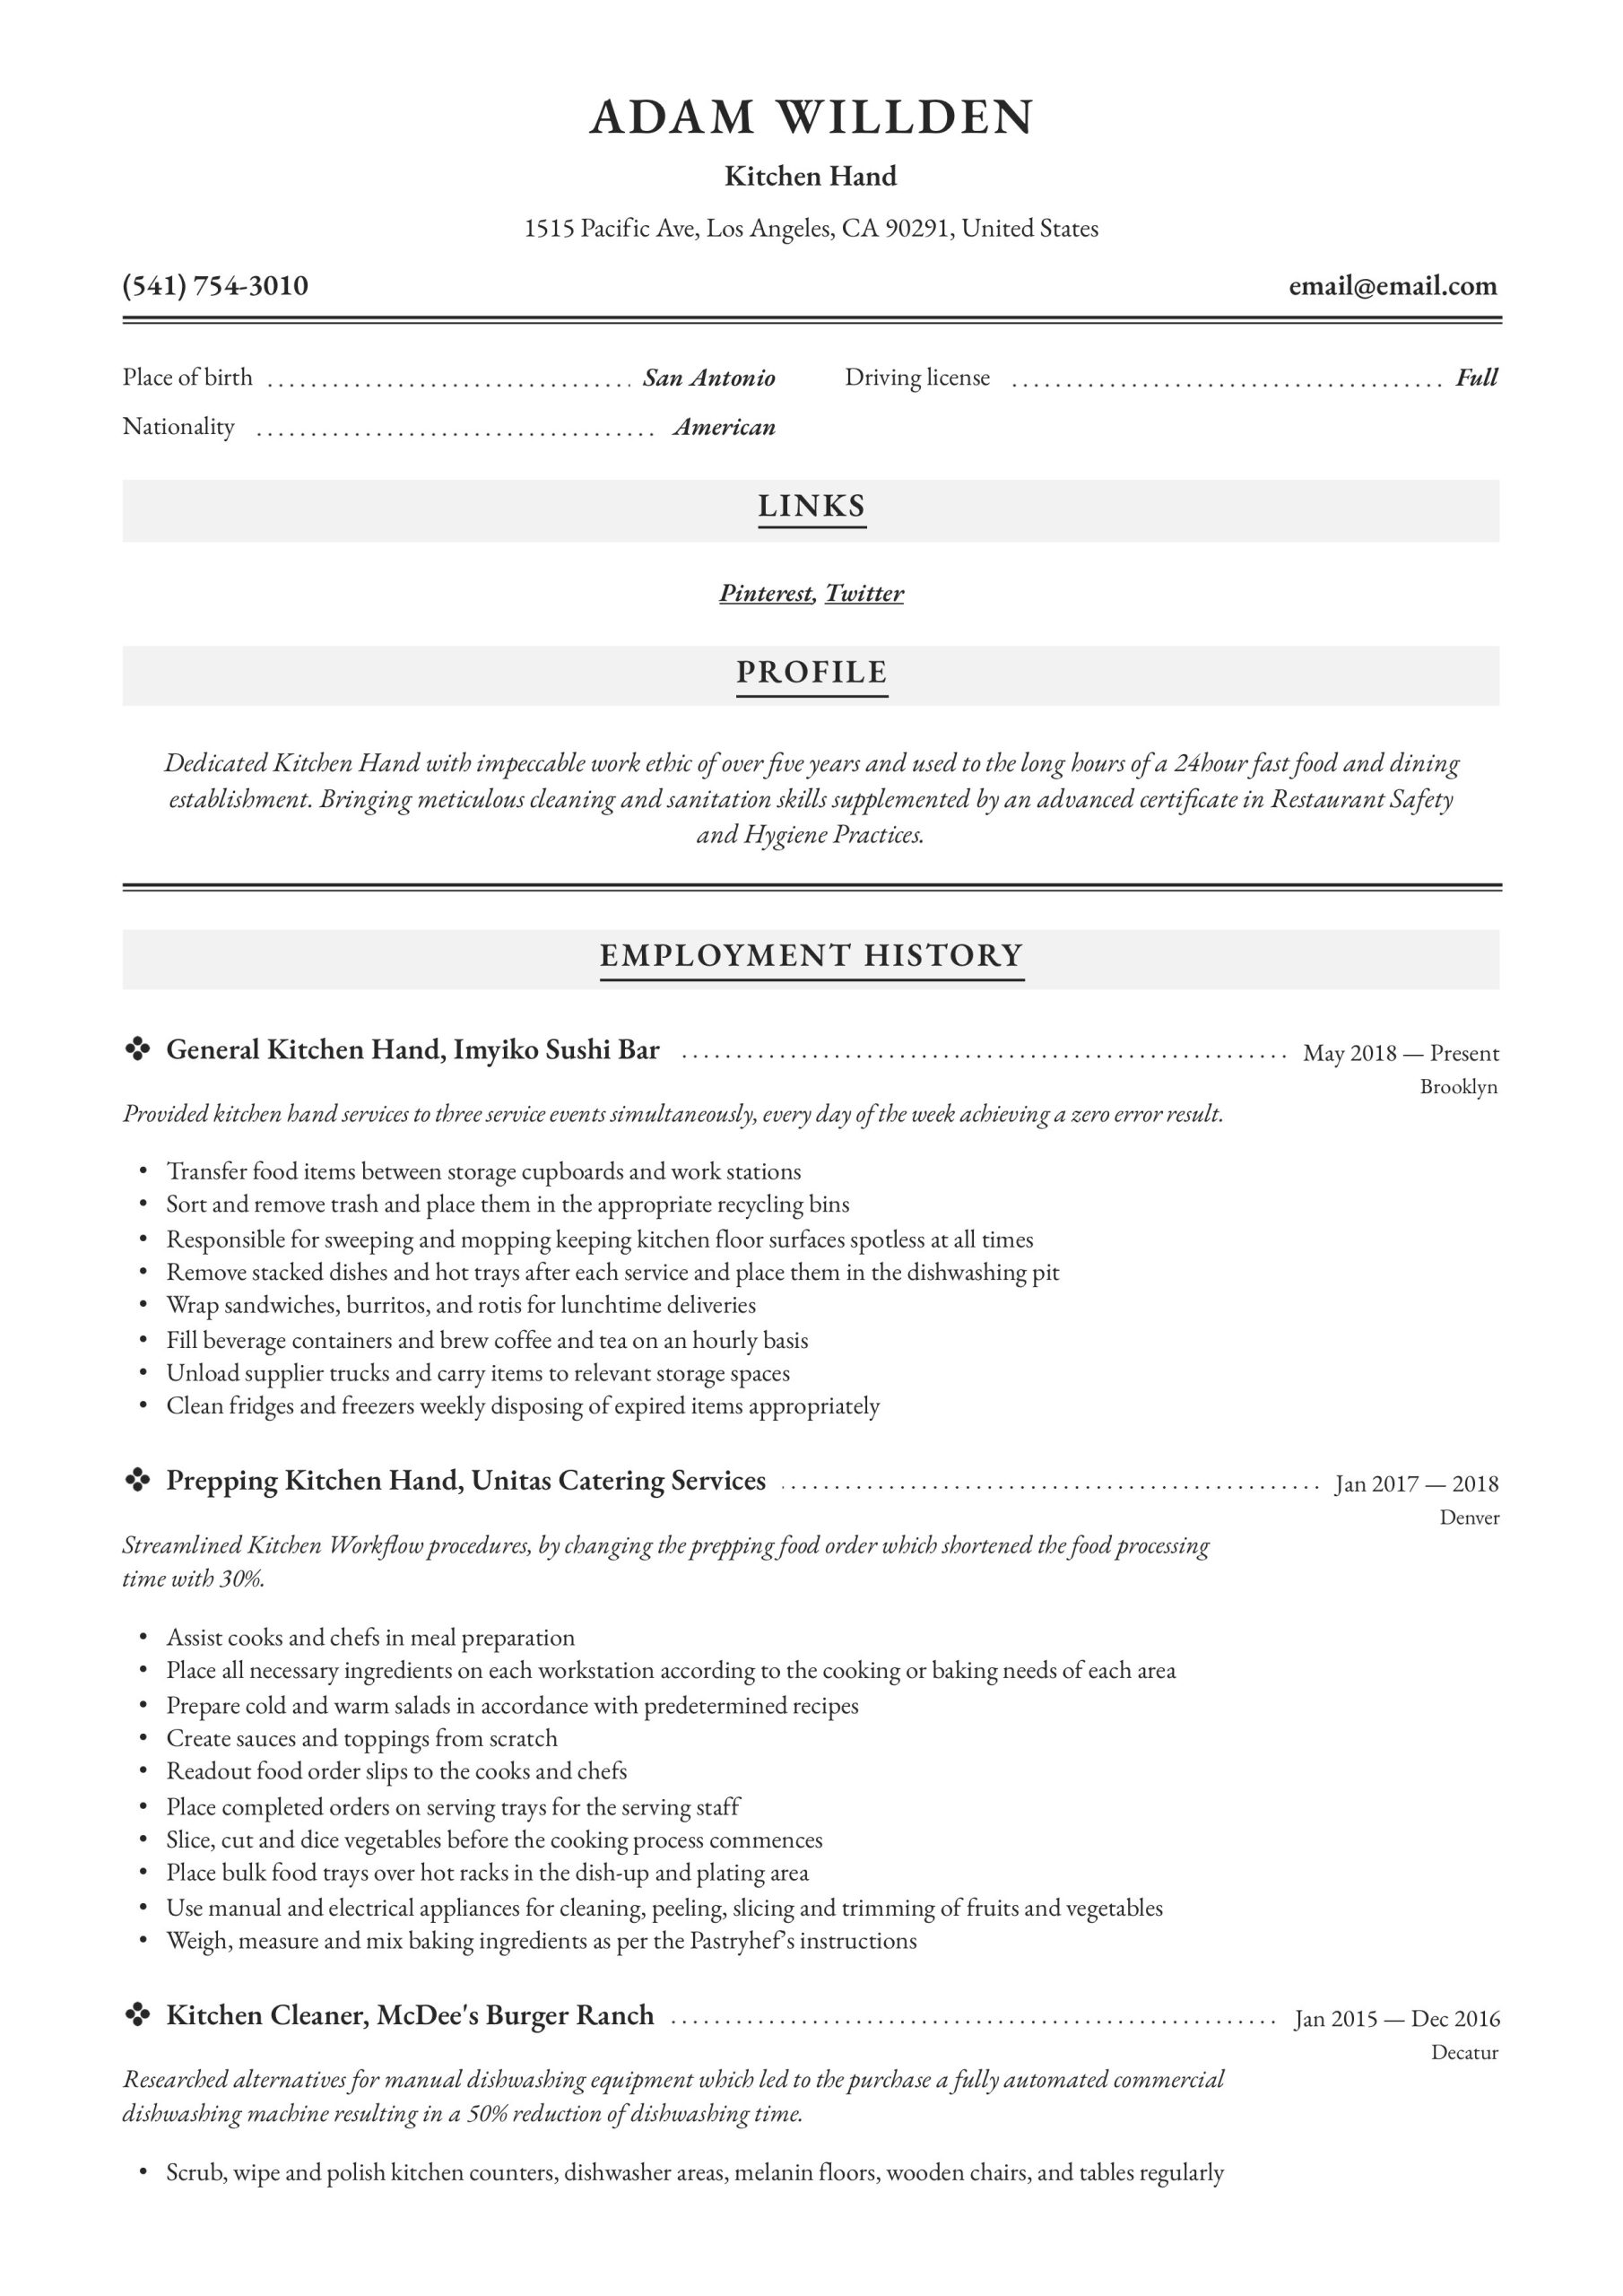 Sample Resume for Restaurant Kitchen Hand Kitchen Hand Resume – Derel